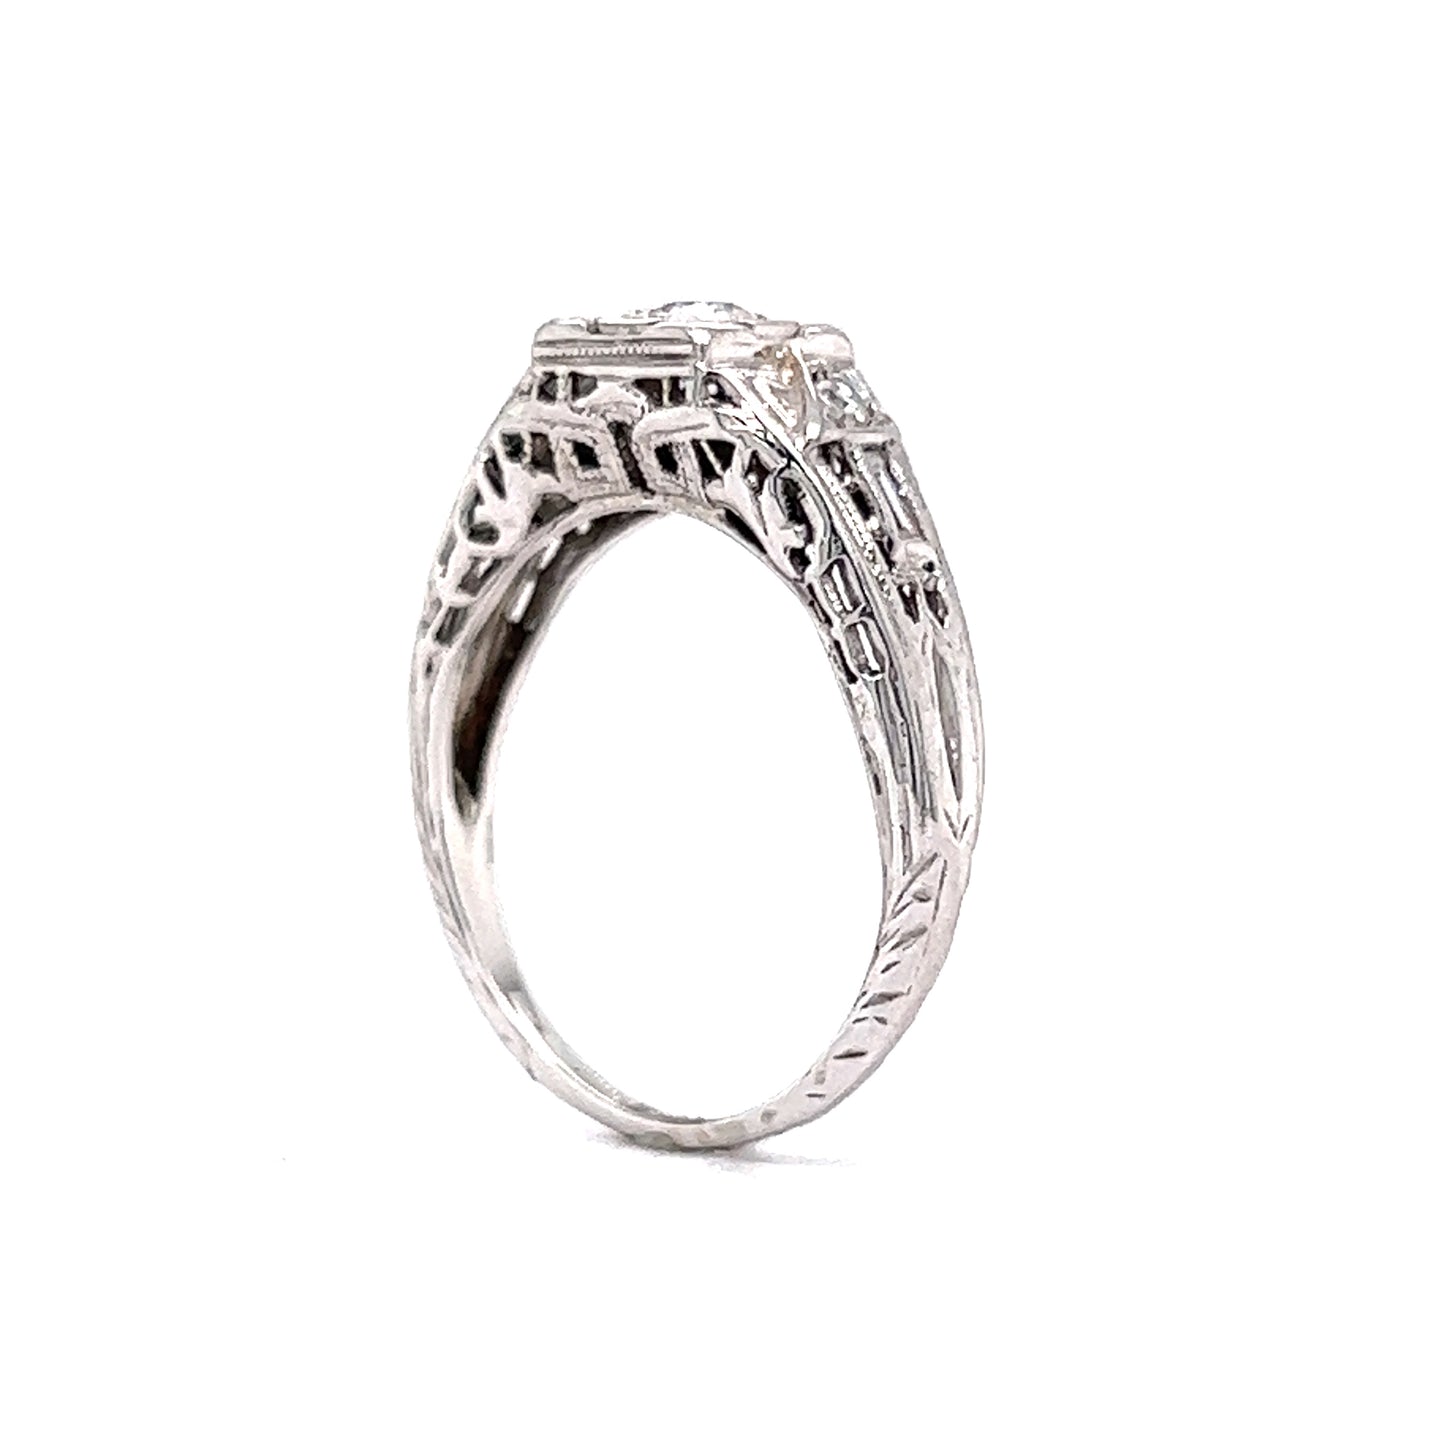 .27 European Diamond Engagement Ring in 18K White Gold